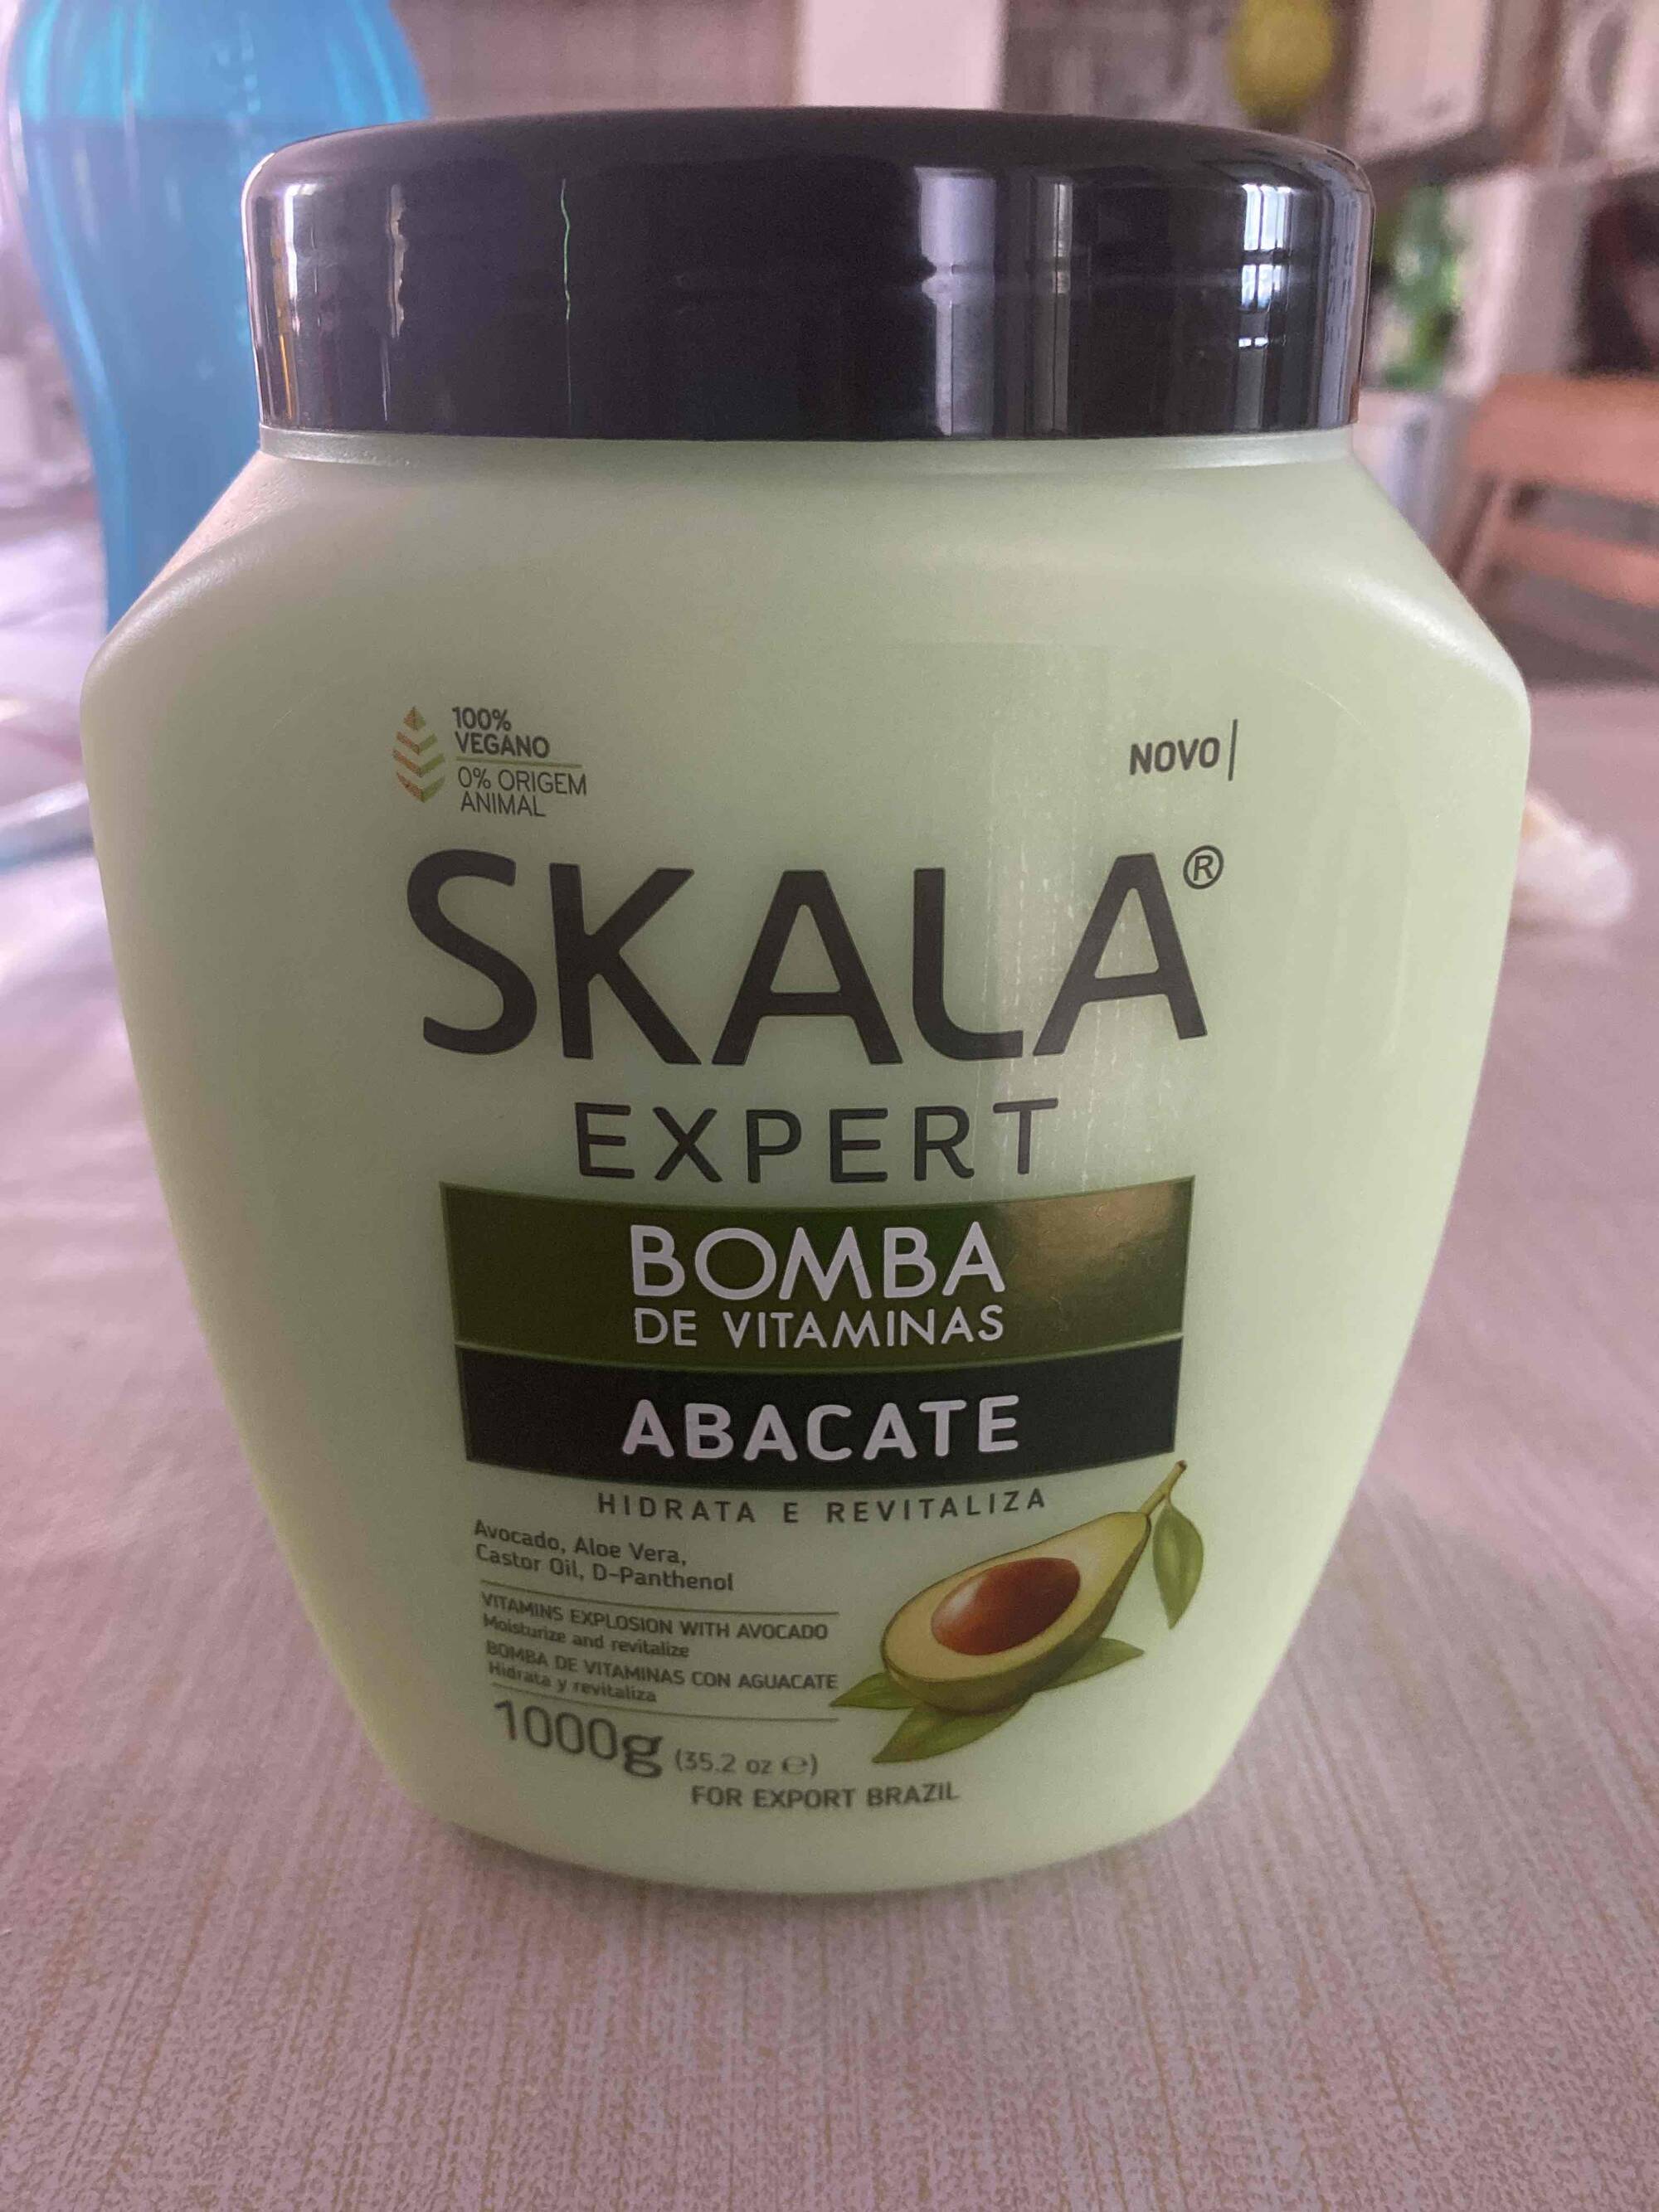 Composition SKALA Expert bomba de vitaminas Abacate hidrata e